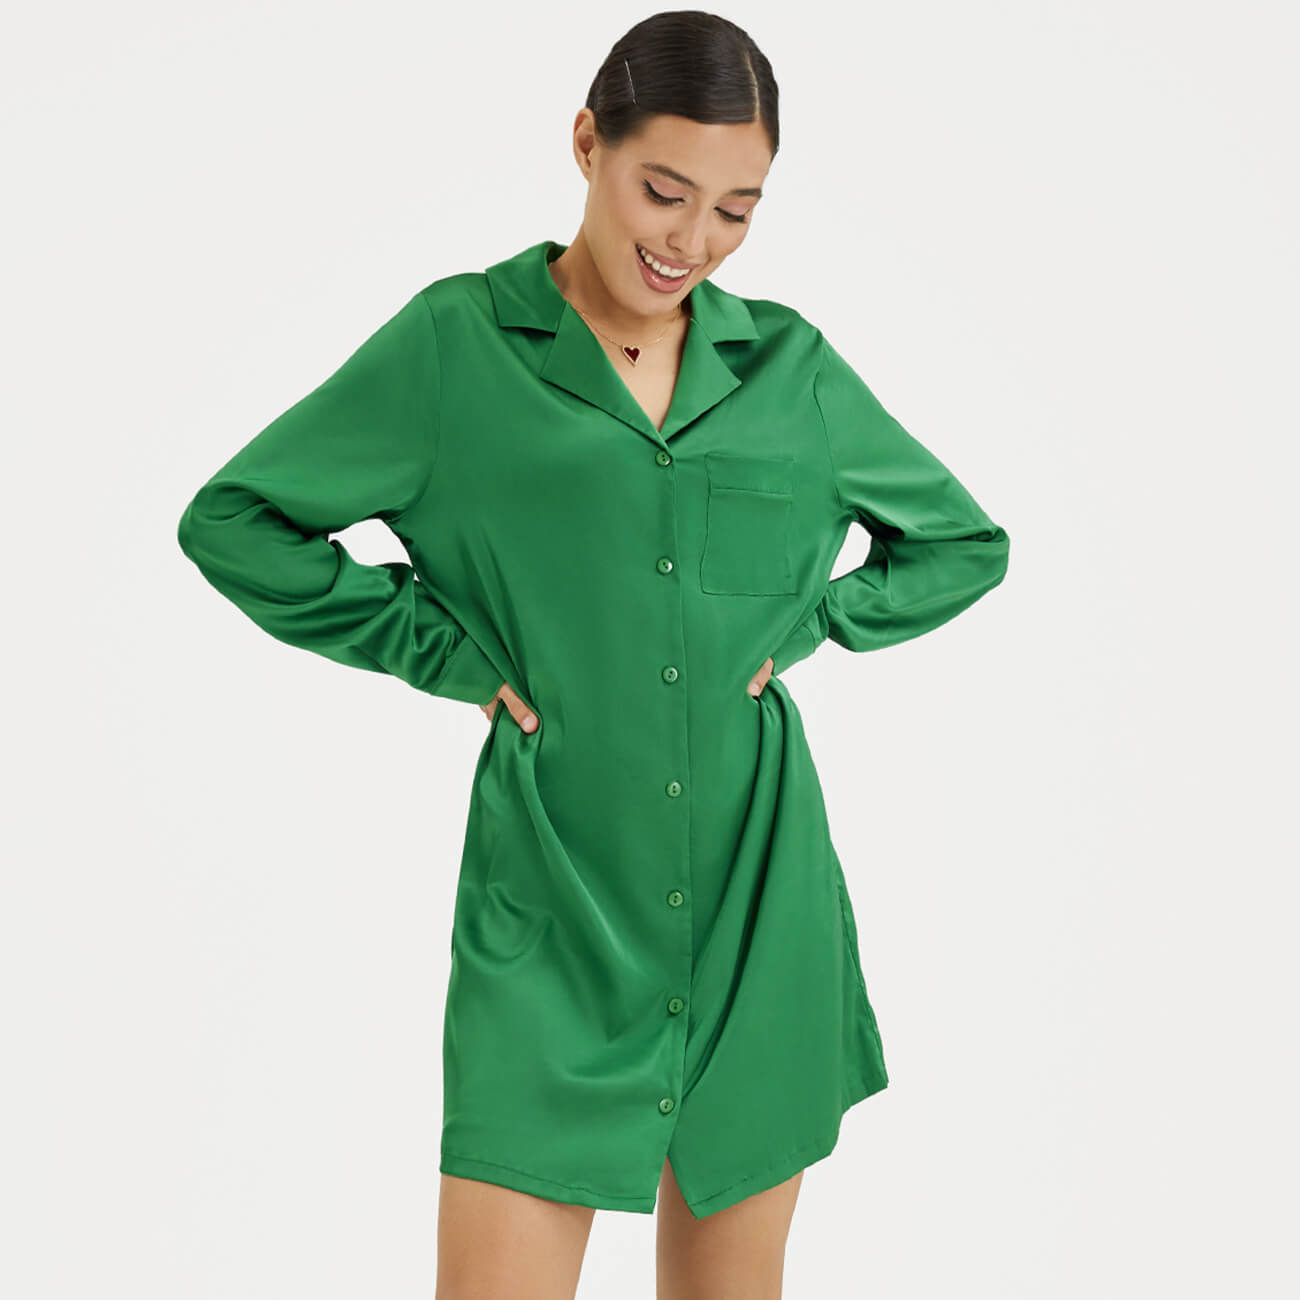 Рубашка женская, р. XL, удлиненная, с длинным рукавом, полиэстер/эластан, зеленая, Madeline рубашка uniqlo super non iron regular fit с длинным рукавом полуширокая цветная